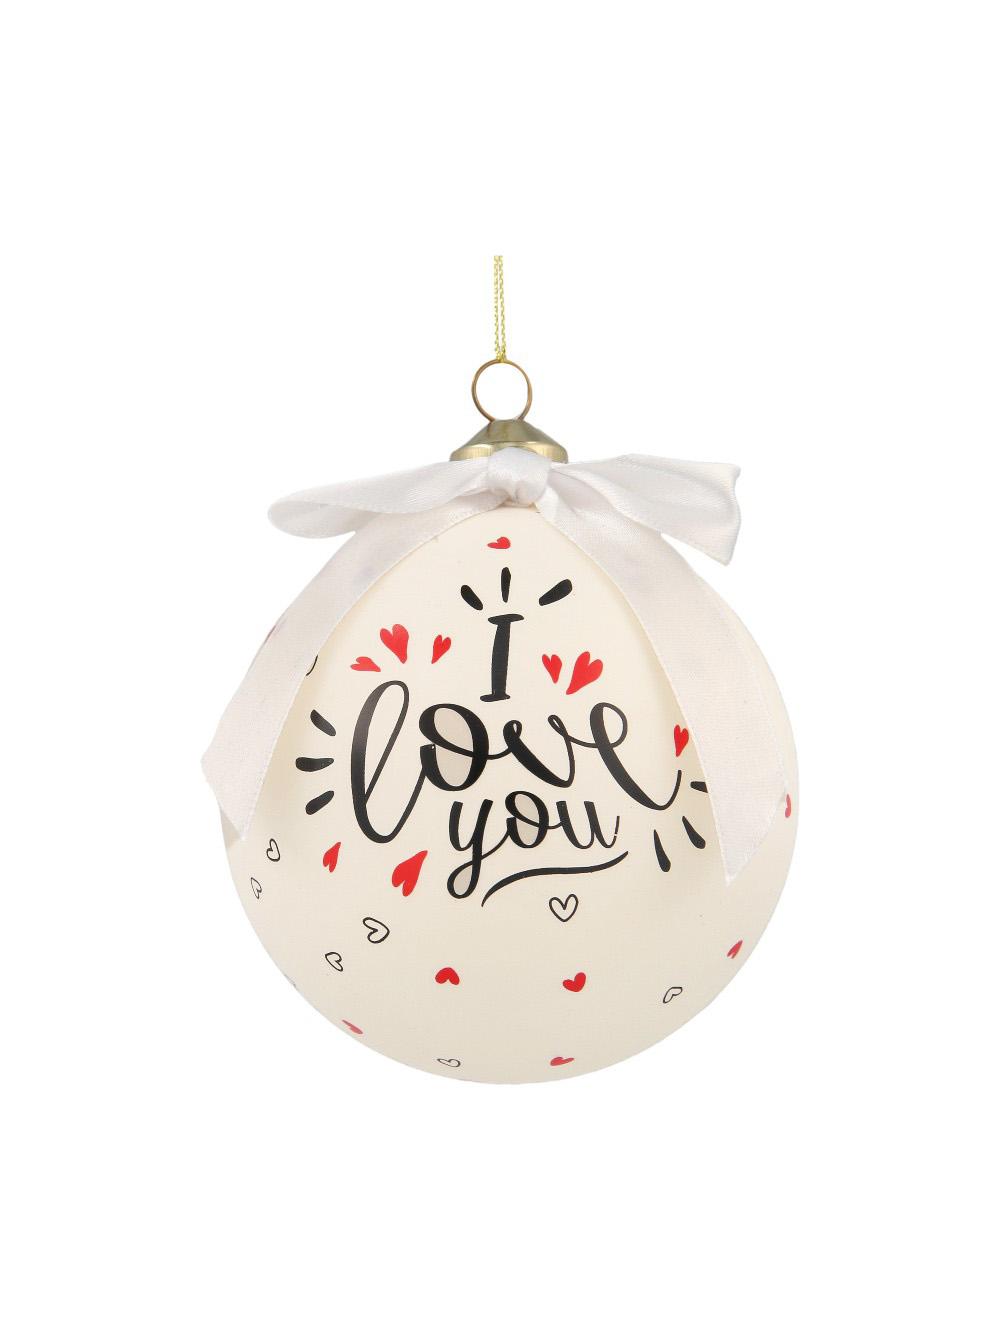 Selected image for POLIMONT Staklena novogodišnja kugla sa porukom u gift pakovanju 10cm I Love You